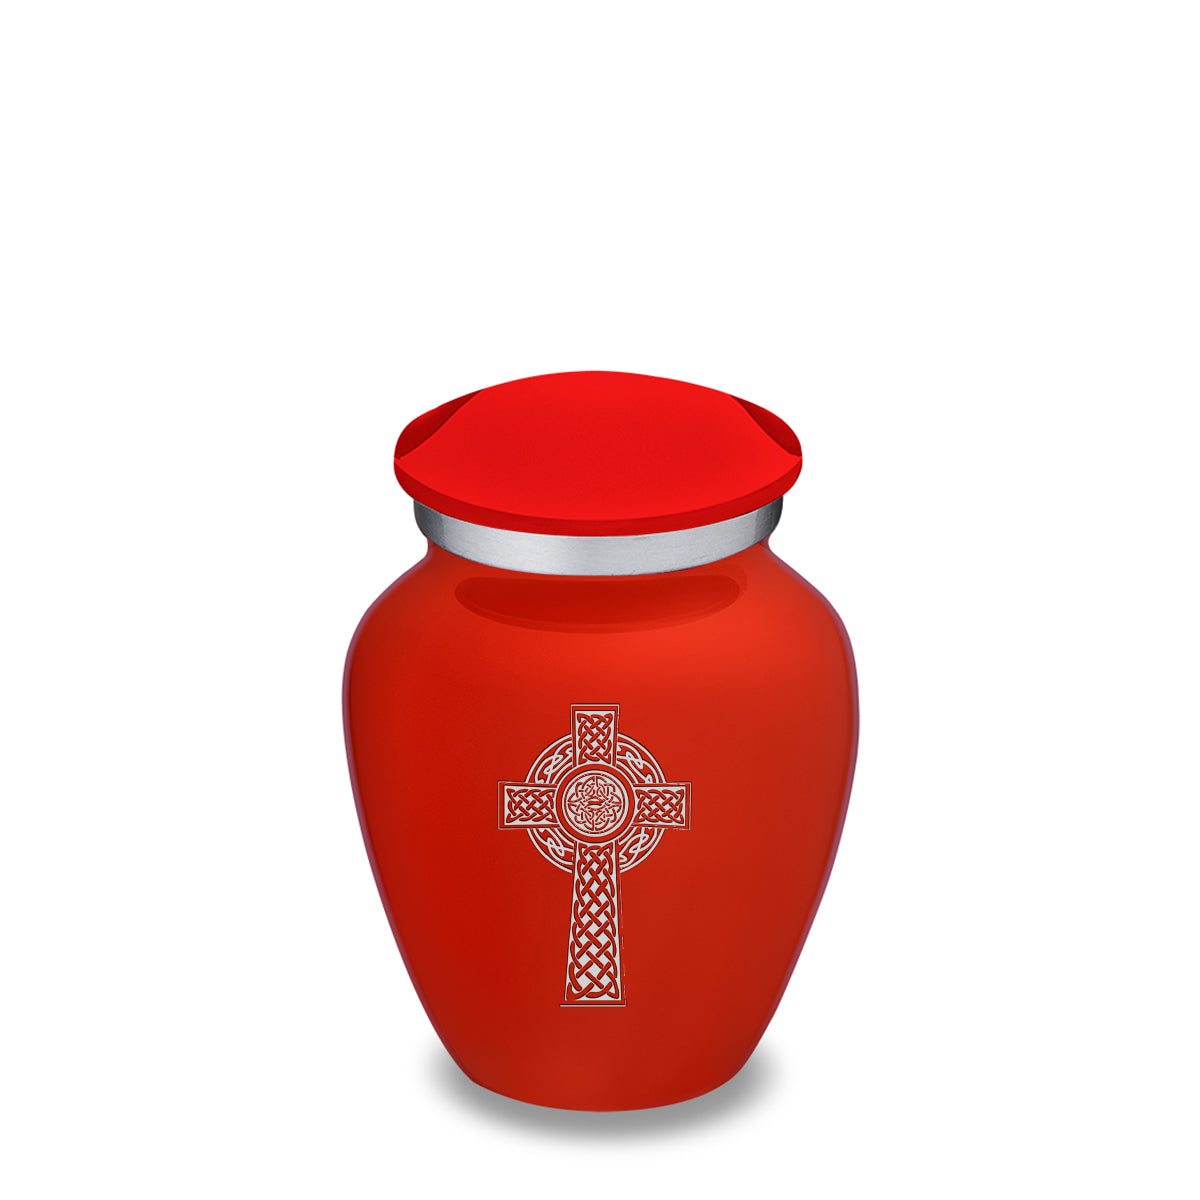 Keepsake Embrace Bright Red Celtic Cross Cremation Urn